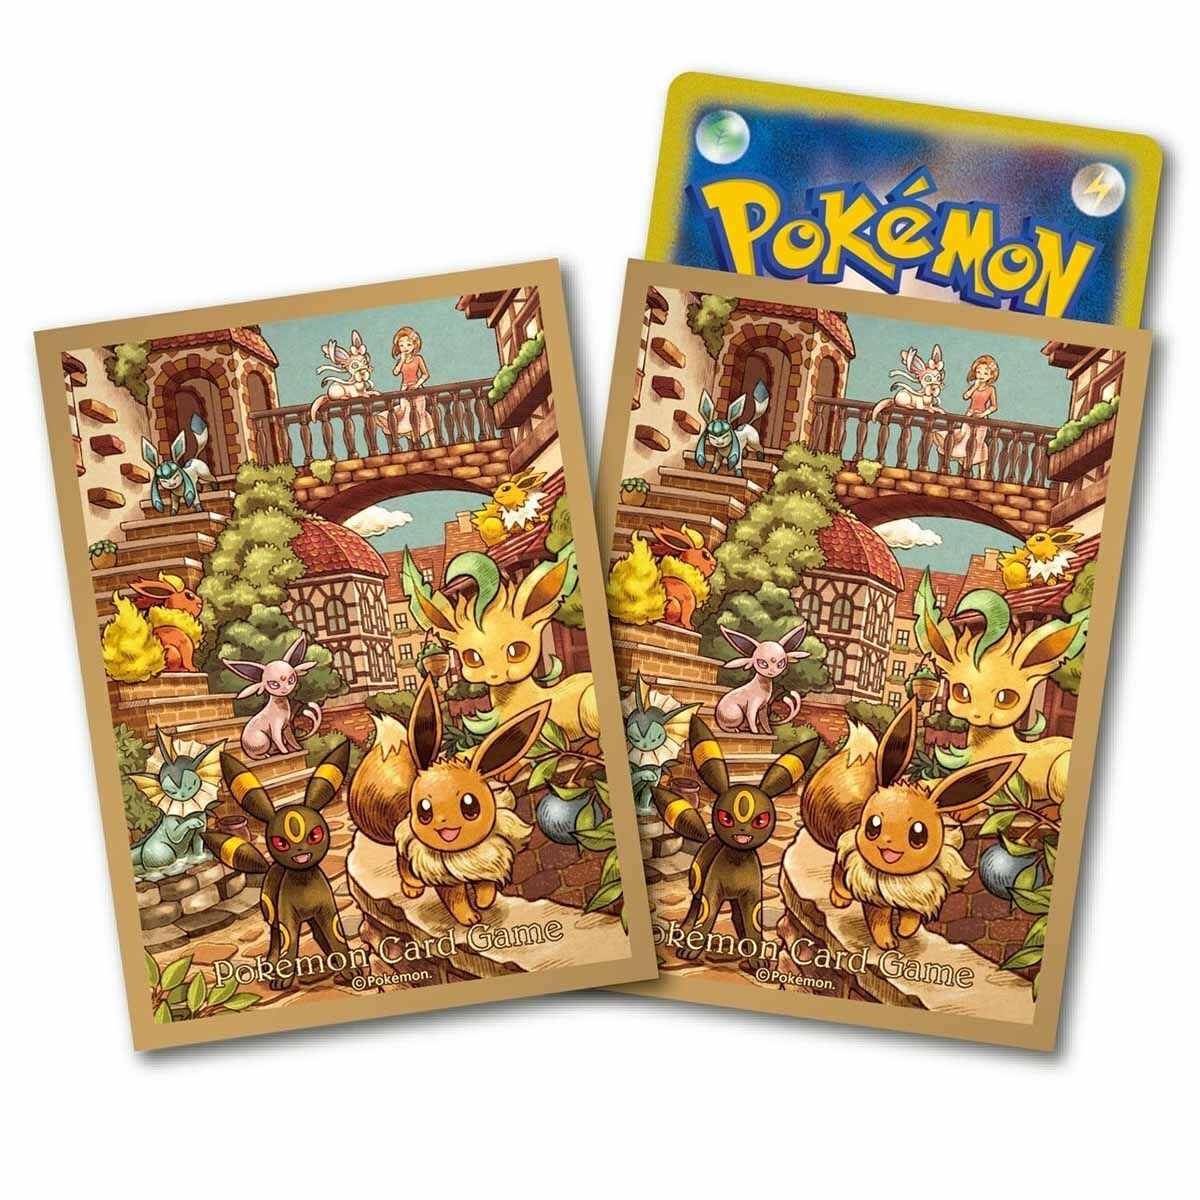 Pokémon Eevee Heroes (s6a) Eeveelutions Set Collection Box